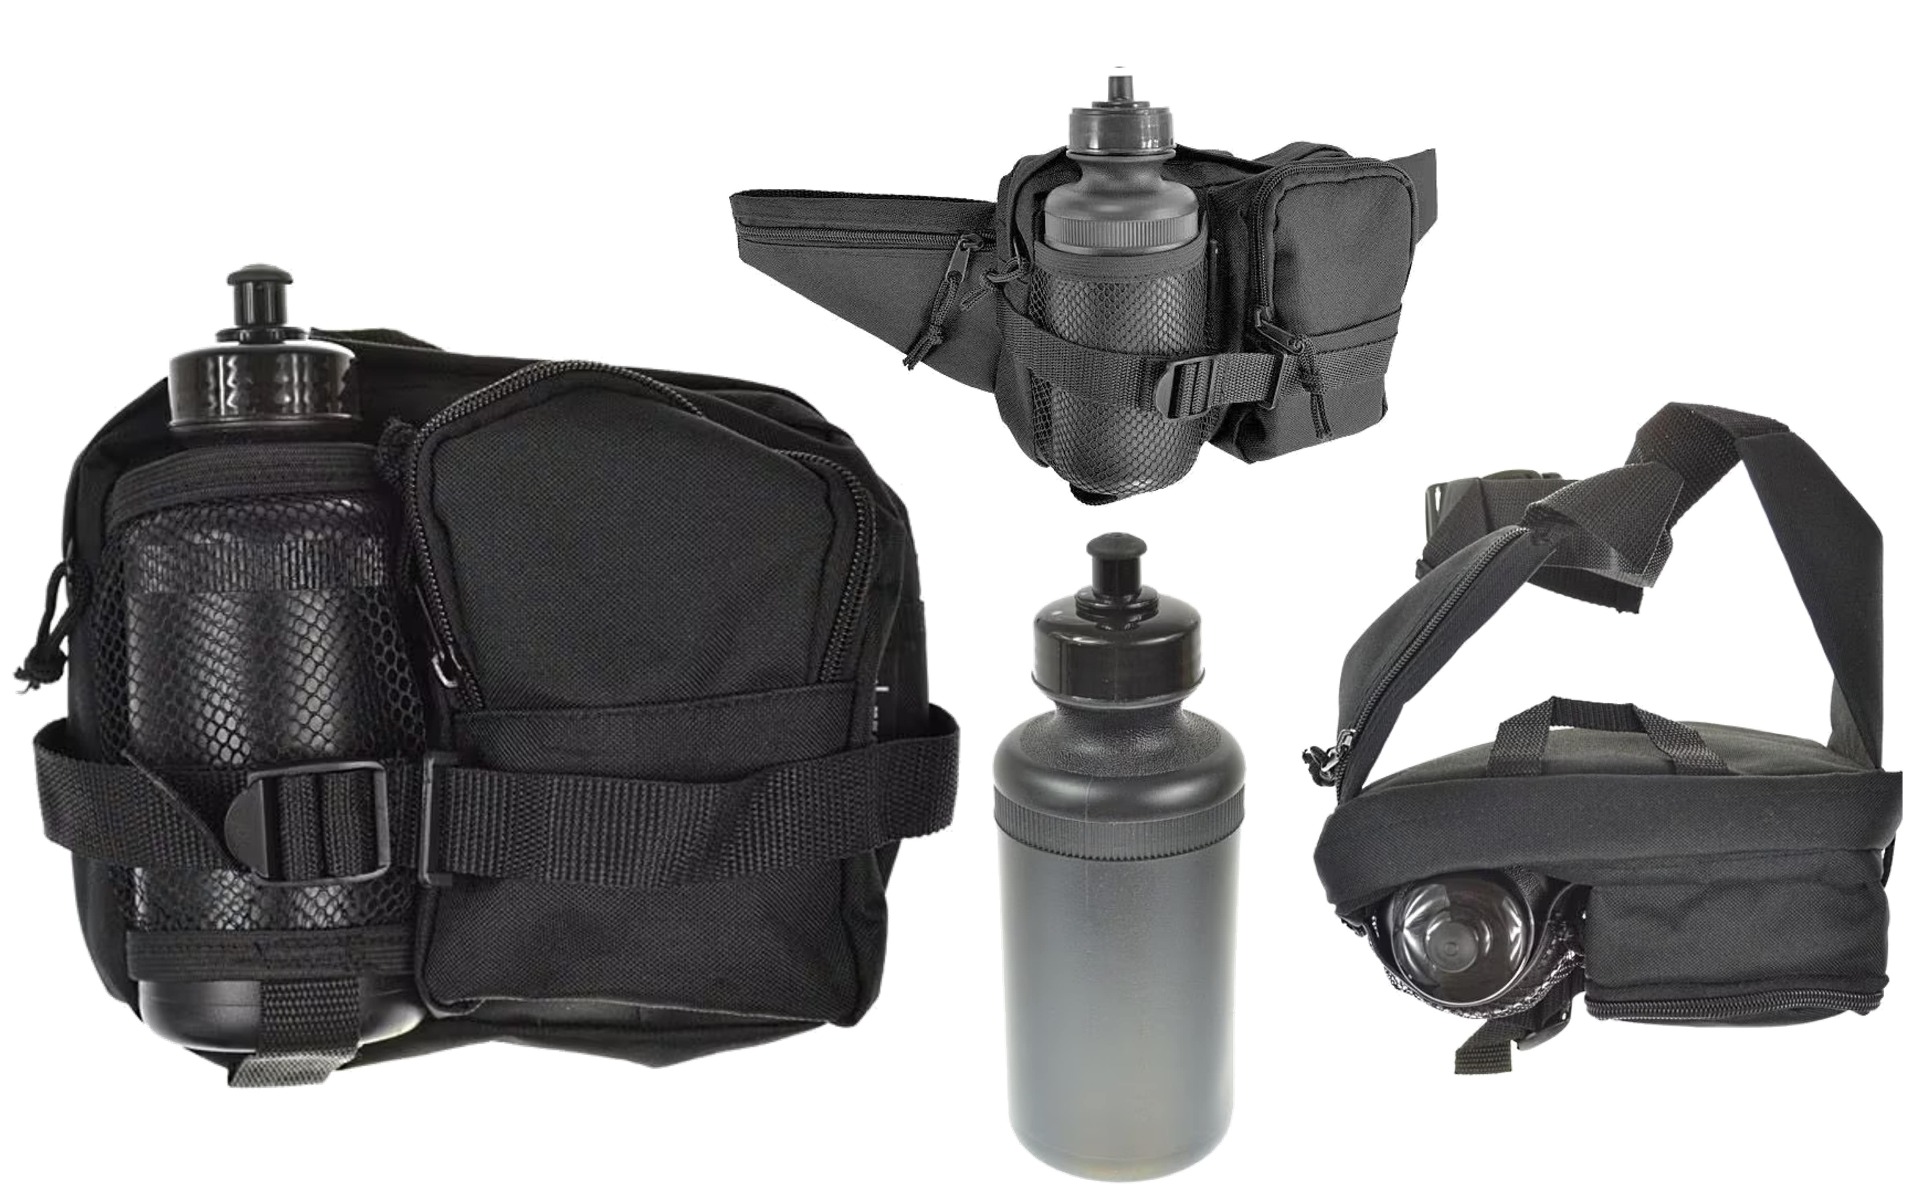 Prenosna EDC torbica za okoli pasu s flaško - črna je idealna za pohodništvo, kampiranje in aktivnosti na prostem. Organizirajte svojo opremo in ostanite hidrirani s to večnamensko torbico. Kupite jo zdaj in pripravite se na udobno ter praktično izkušnjo 